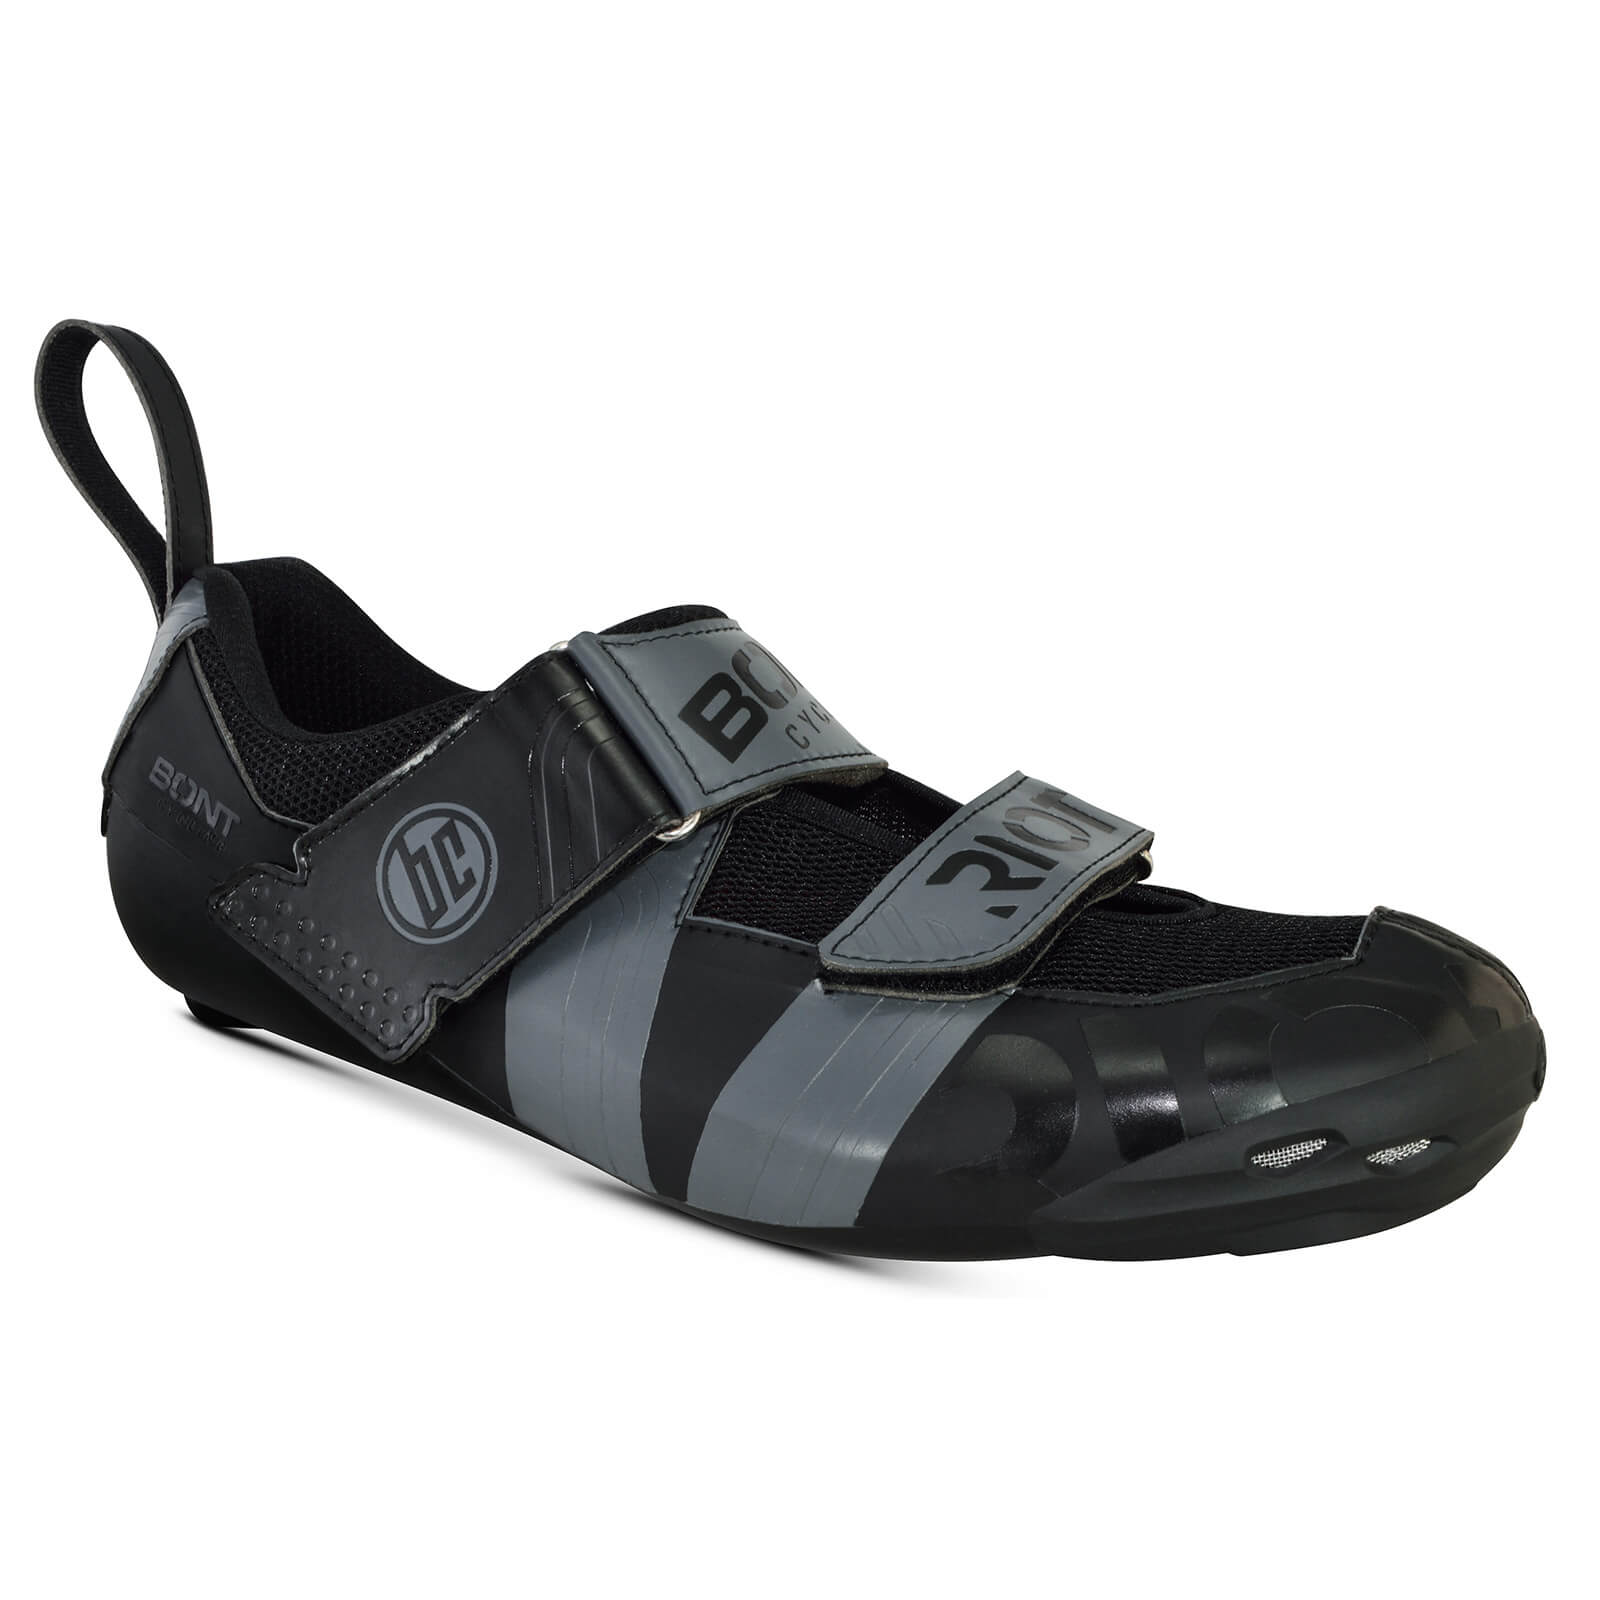 Bont Riot TR+ Road Shoes - EU 40.5 - Black/Grey